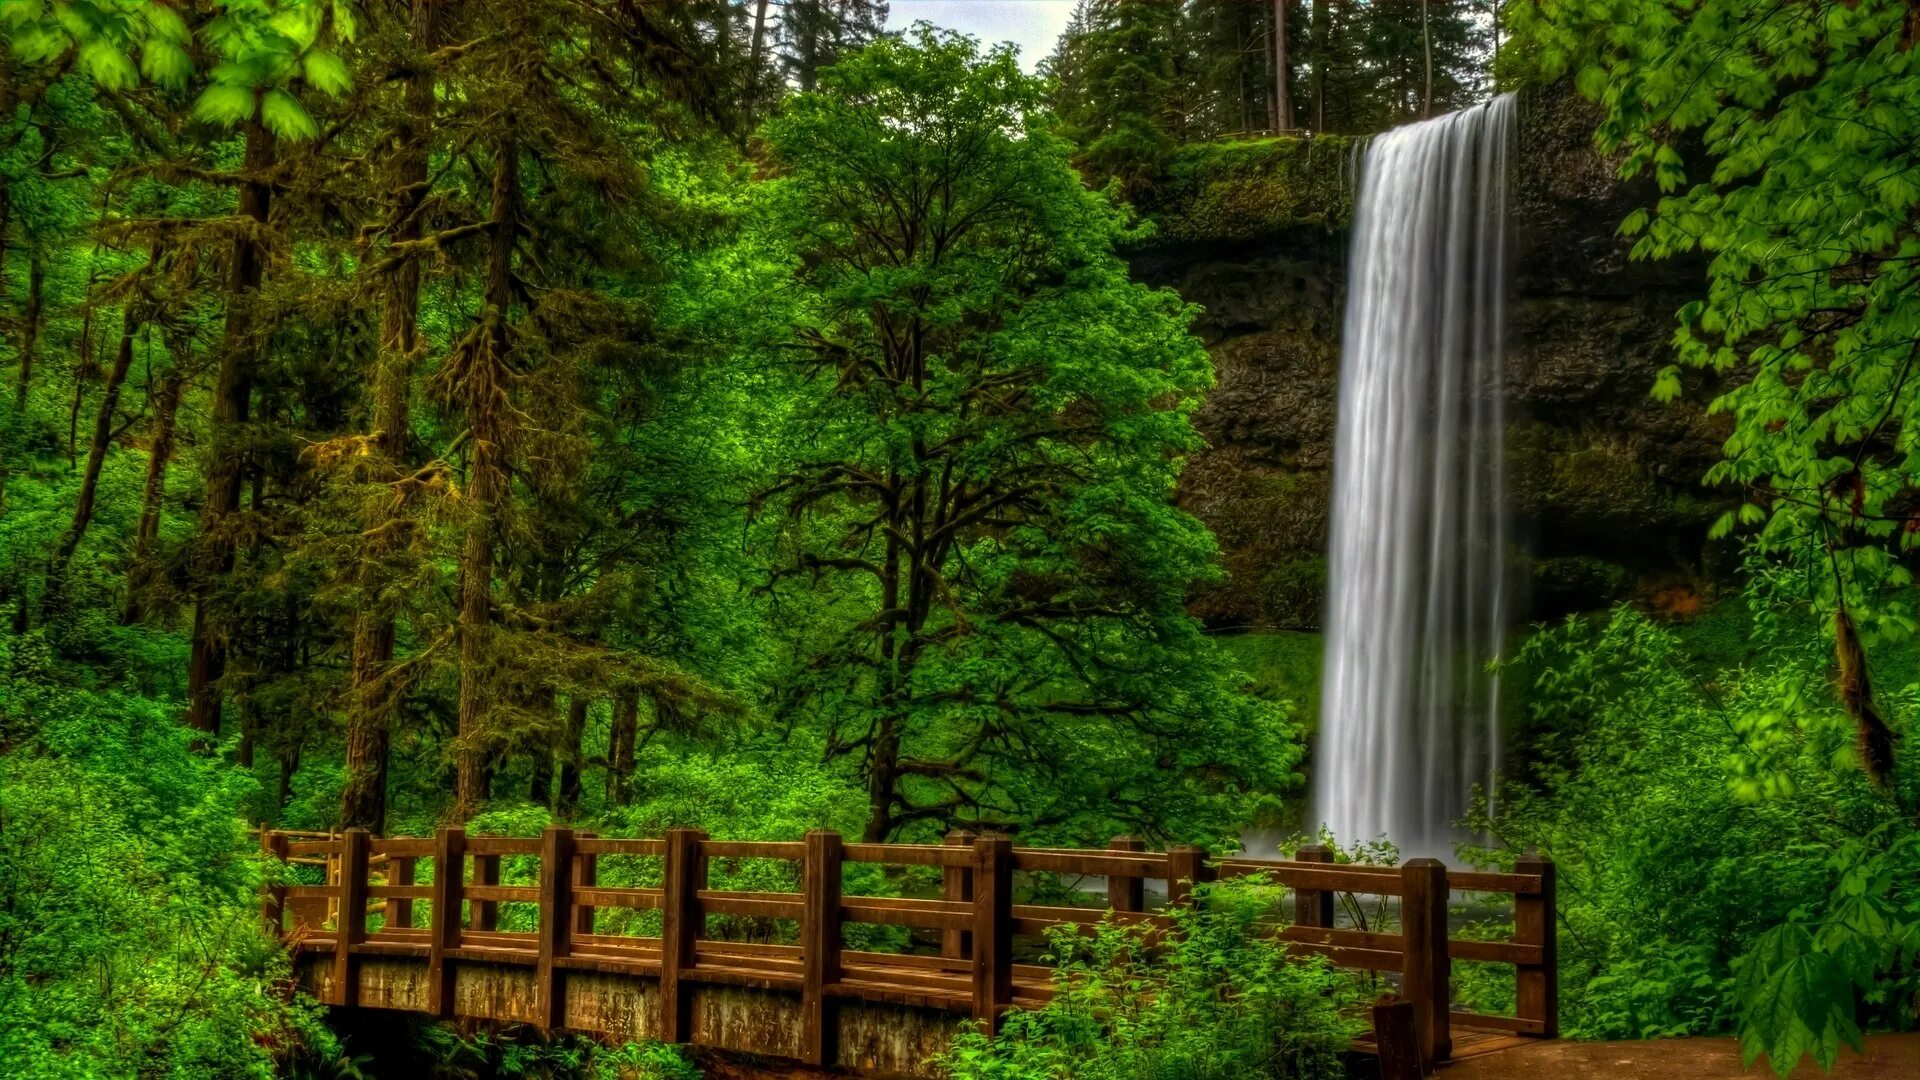 Обои природа на телефон вертикальные высокого качества. Природа. Водопад в лесу. Лесной водопад. Природа с деревьями и водопадами.